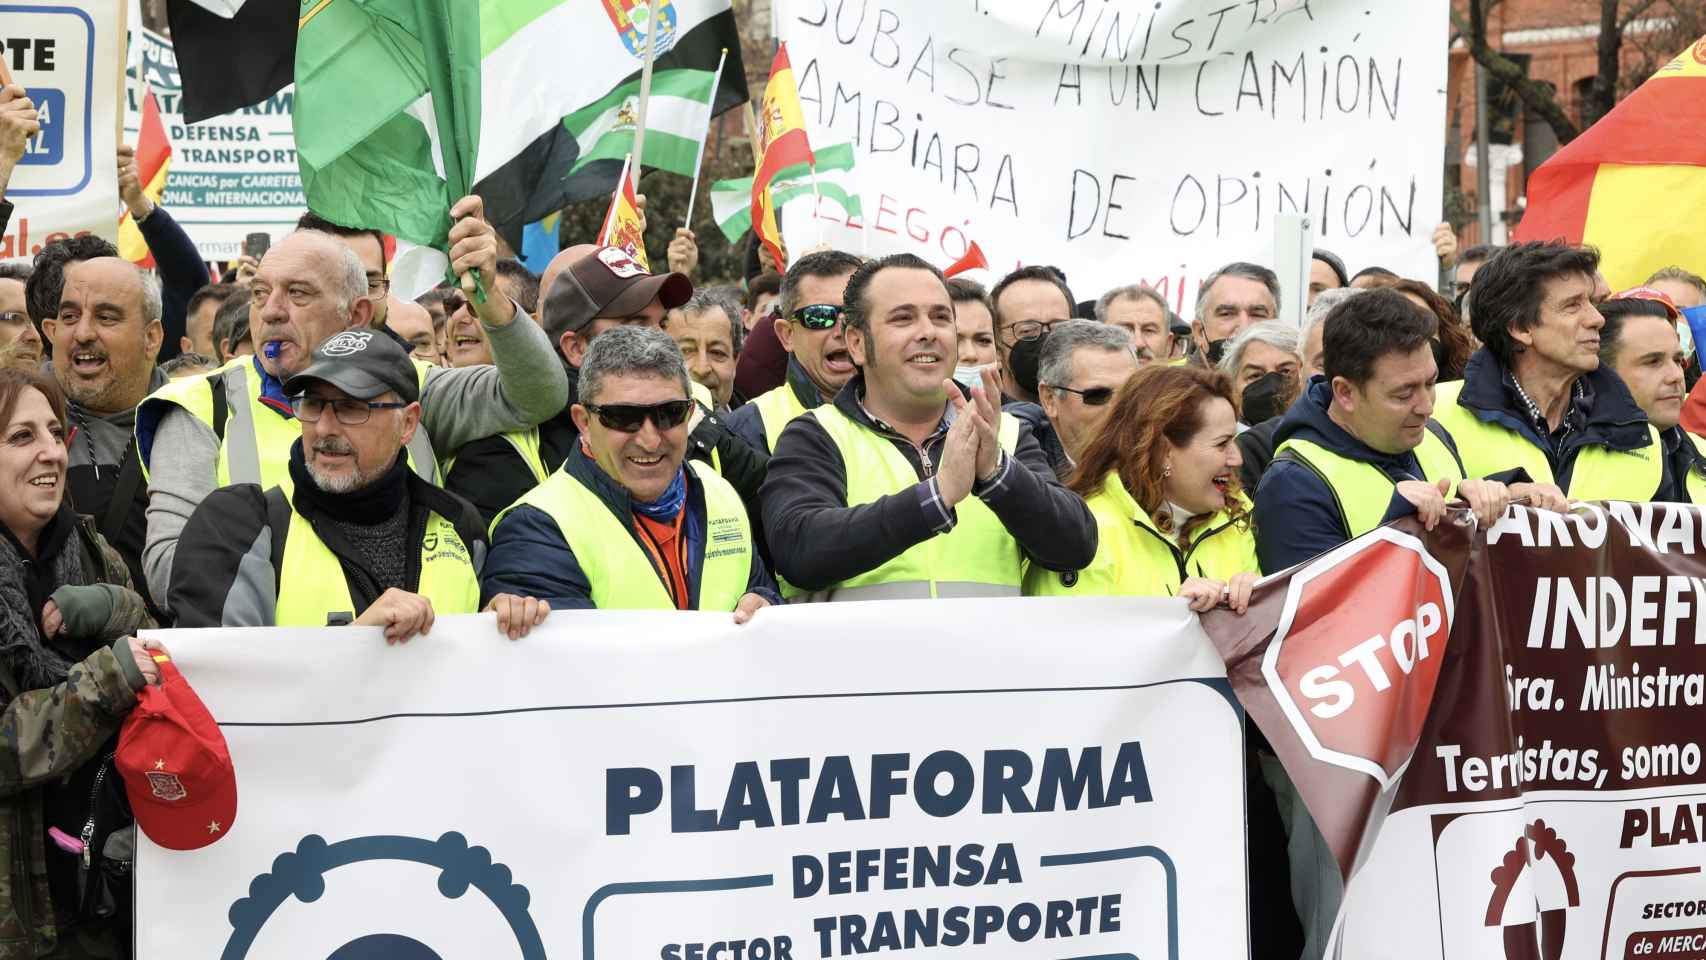 La Plataforma en Defensa del Transporte, que se ha manifestado hoy en Madrid, mantiene la huelga indefinida